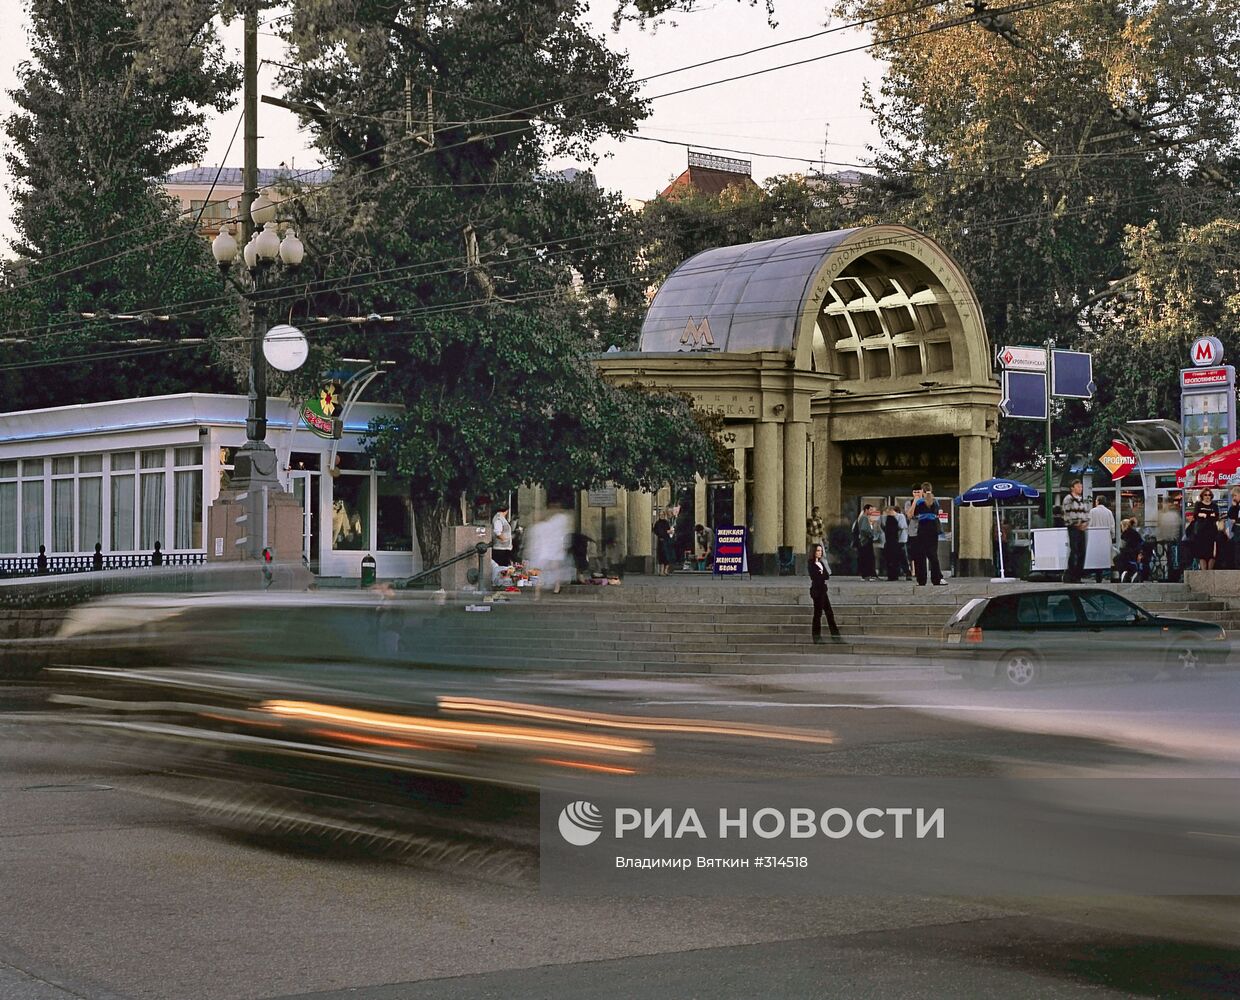 Станция метро "Кропоткинская"